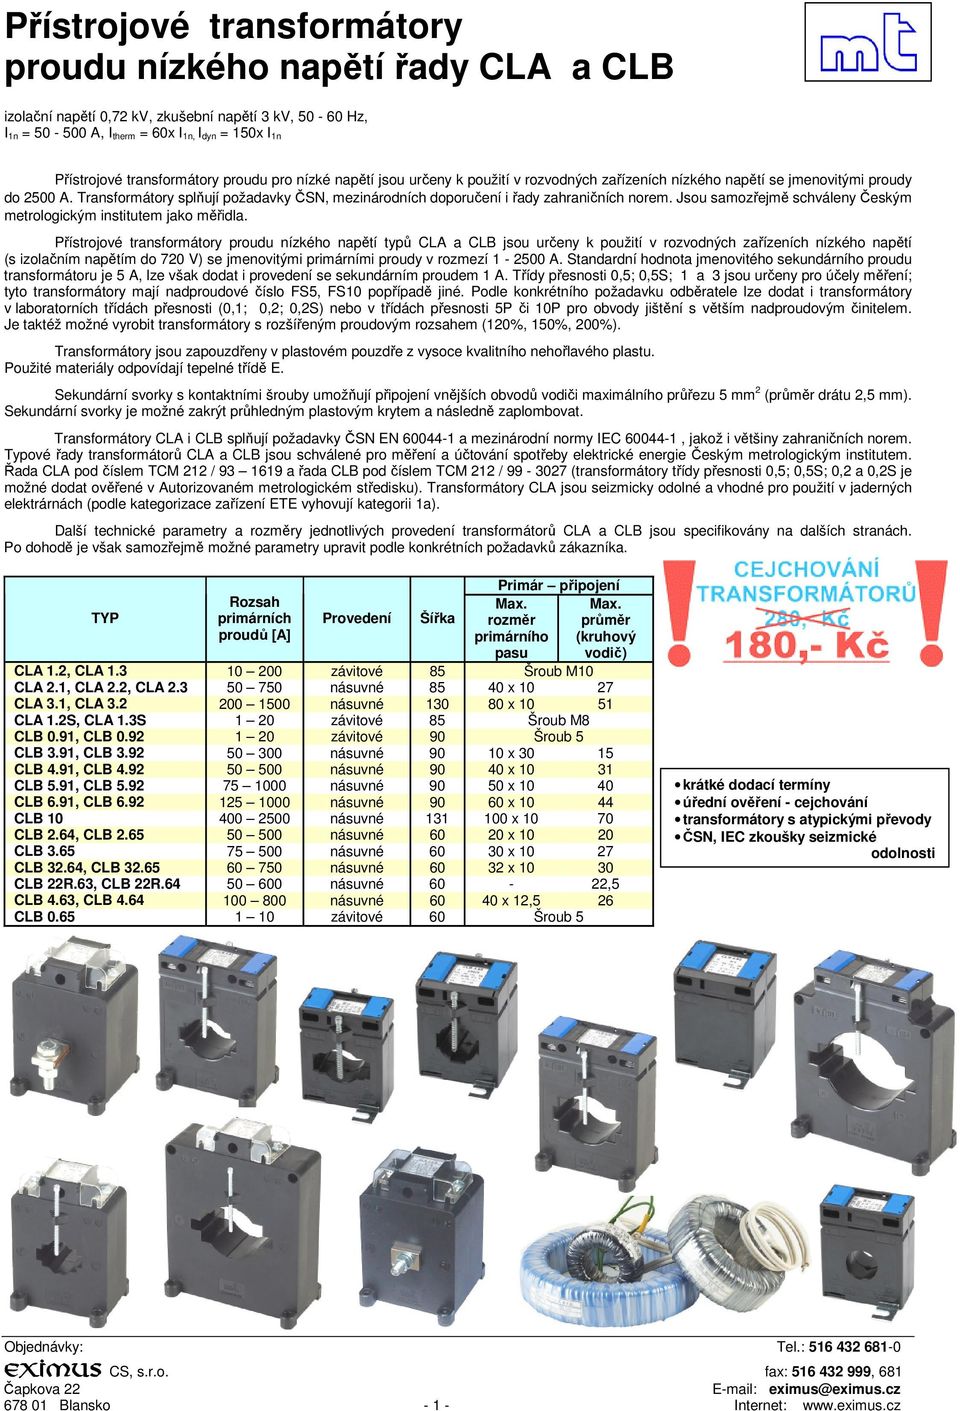 Přístrojové transformátory typů CLA a CLB jsou určeny k použití v rozvodných zařízeních nízkého napětí (s izolačním napětím do 720 V) se jmenovitými primárními proudy v rozmezí 1-2500 A.